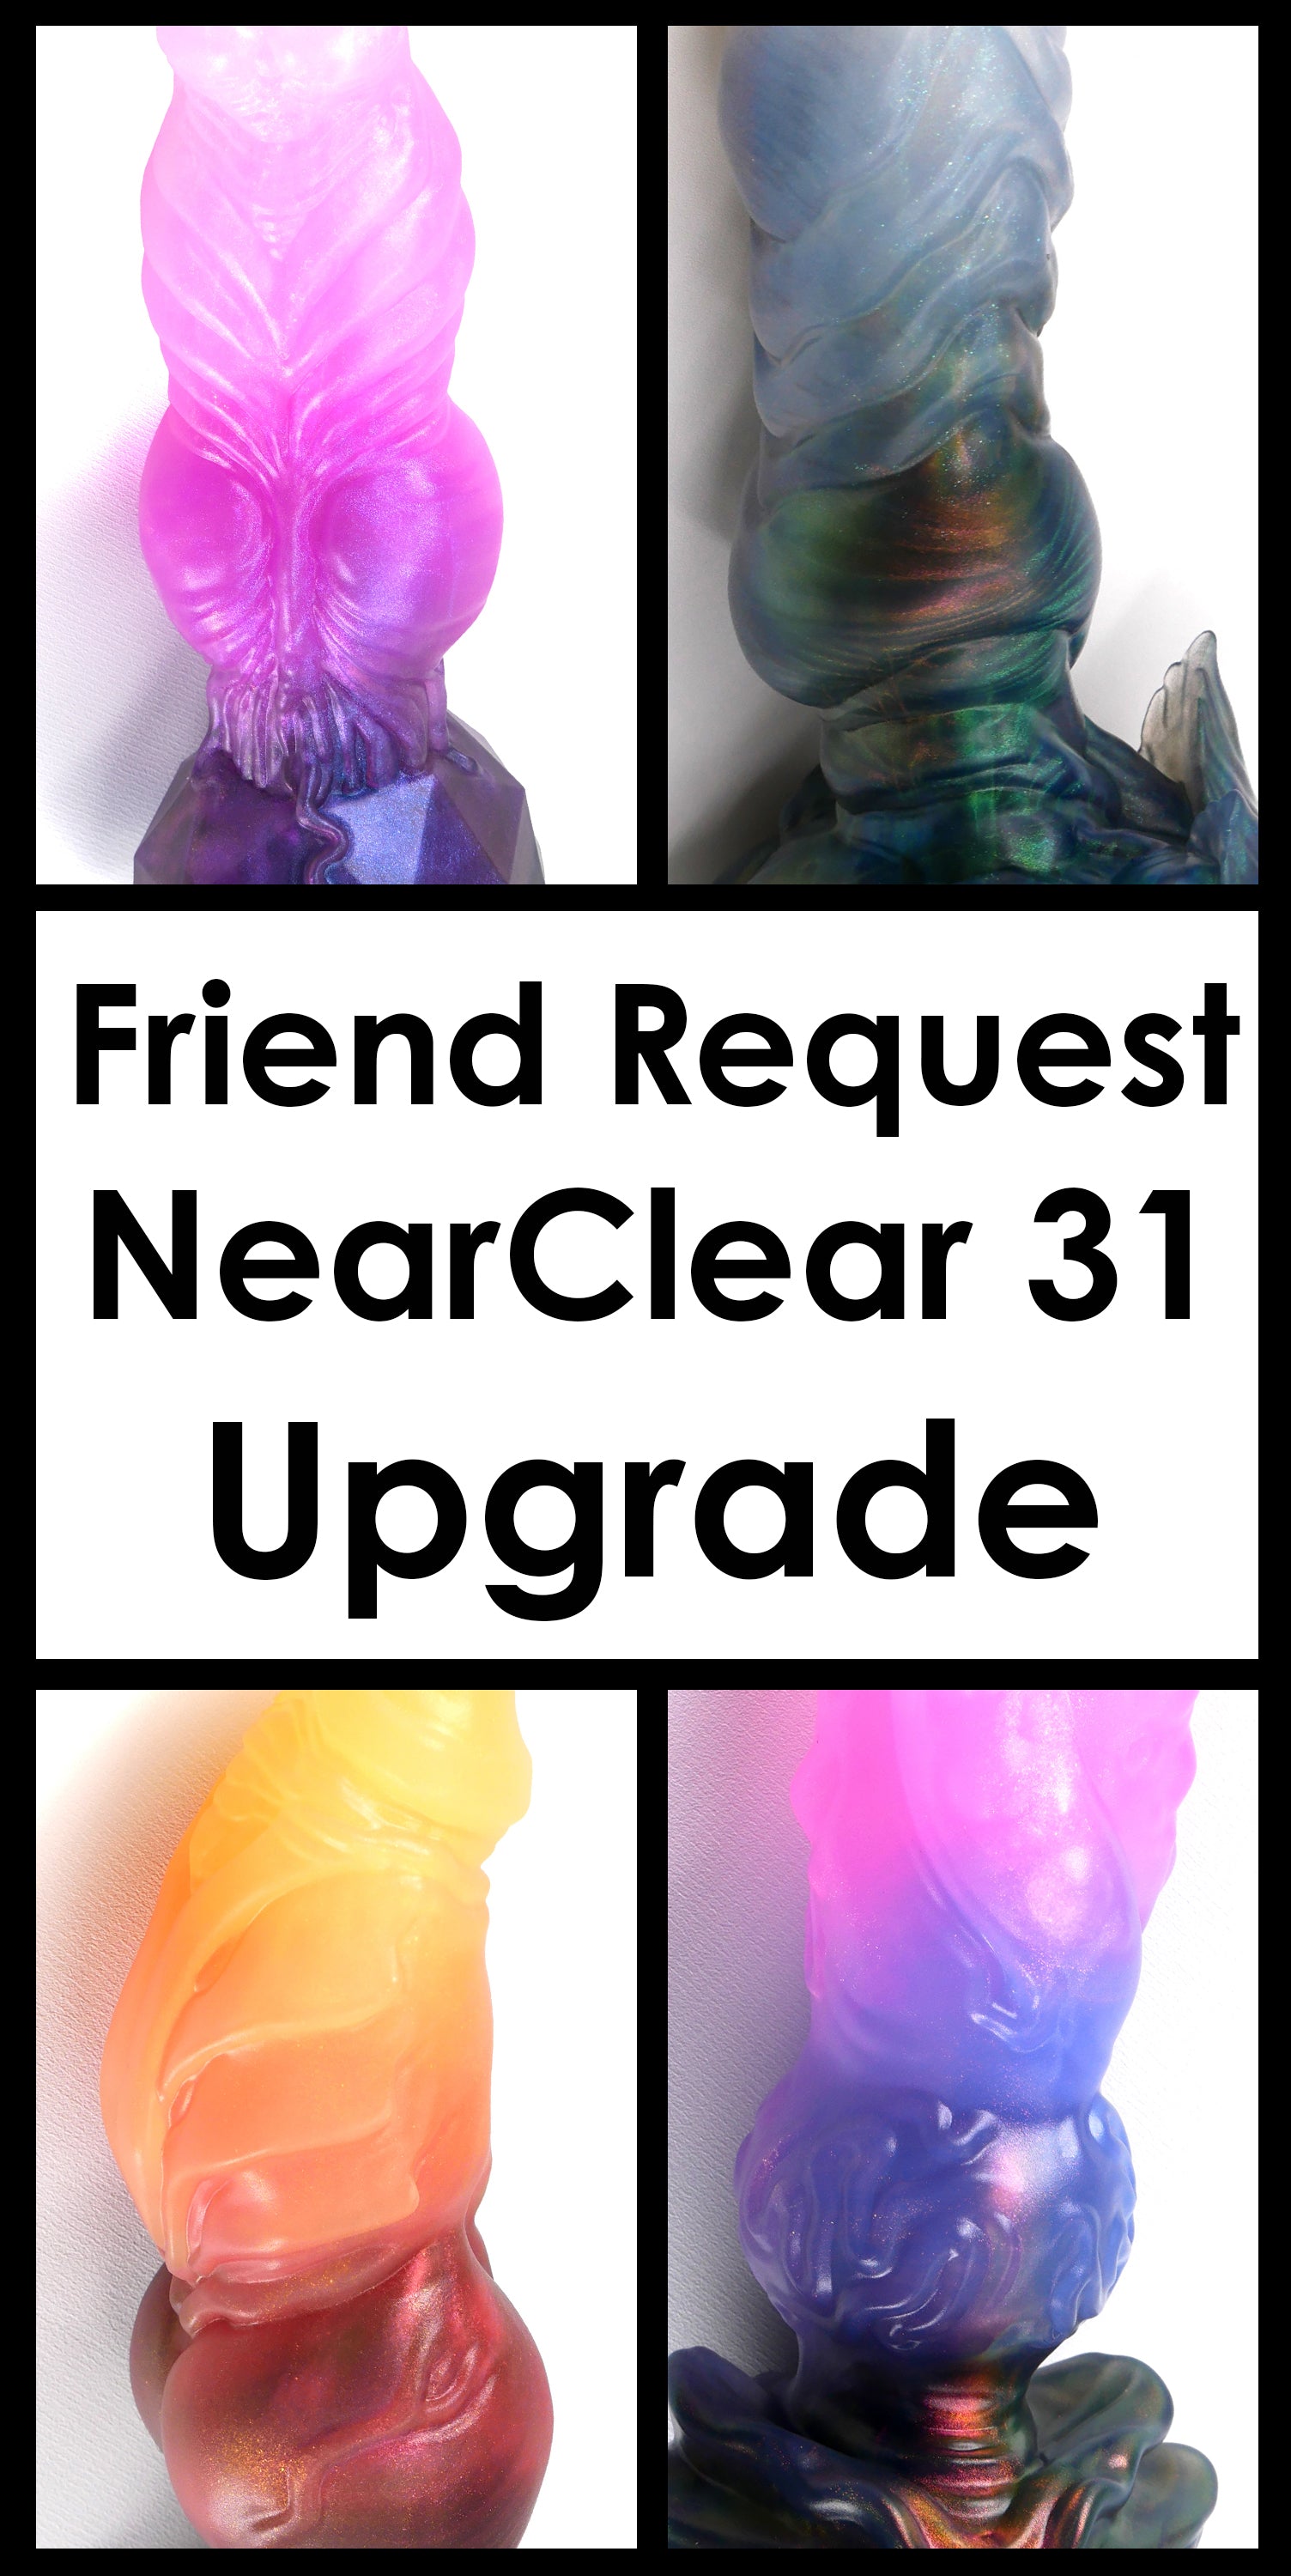 Friend Request Upgrade: NearClear 31